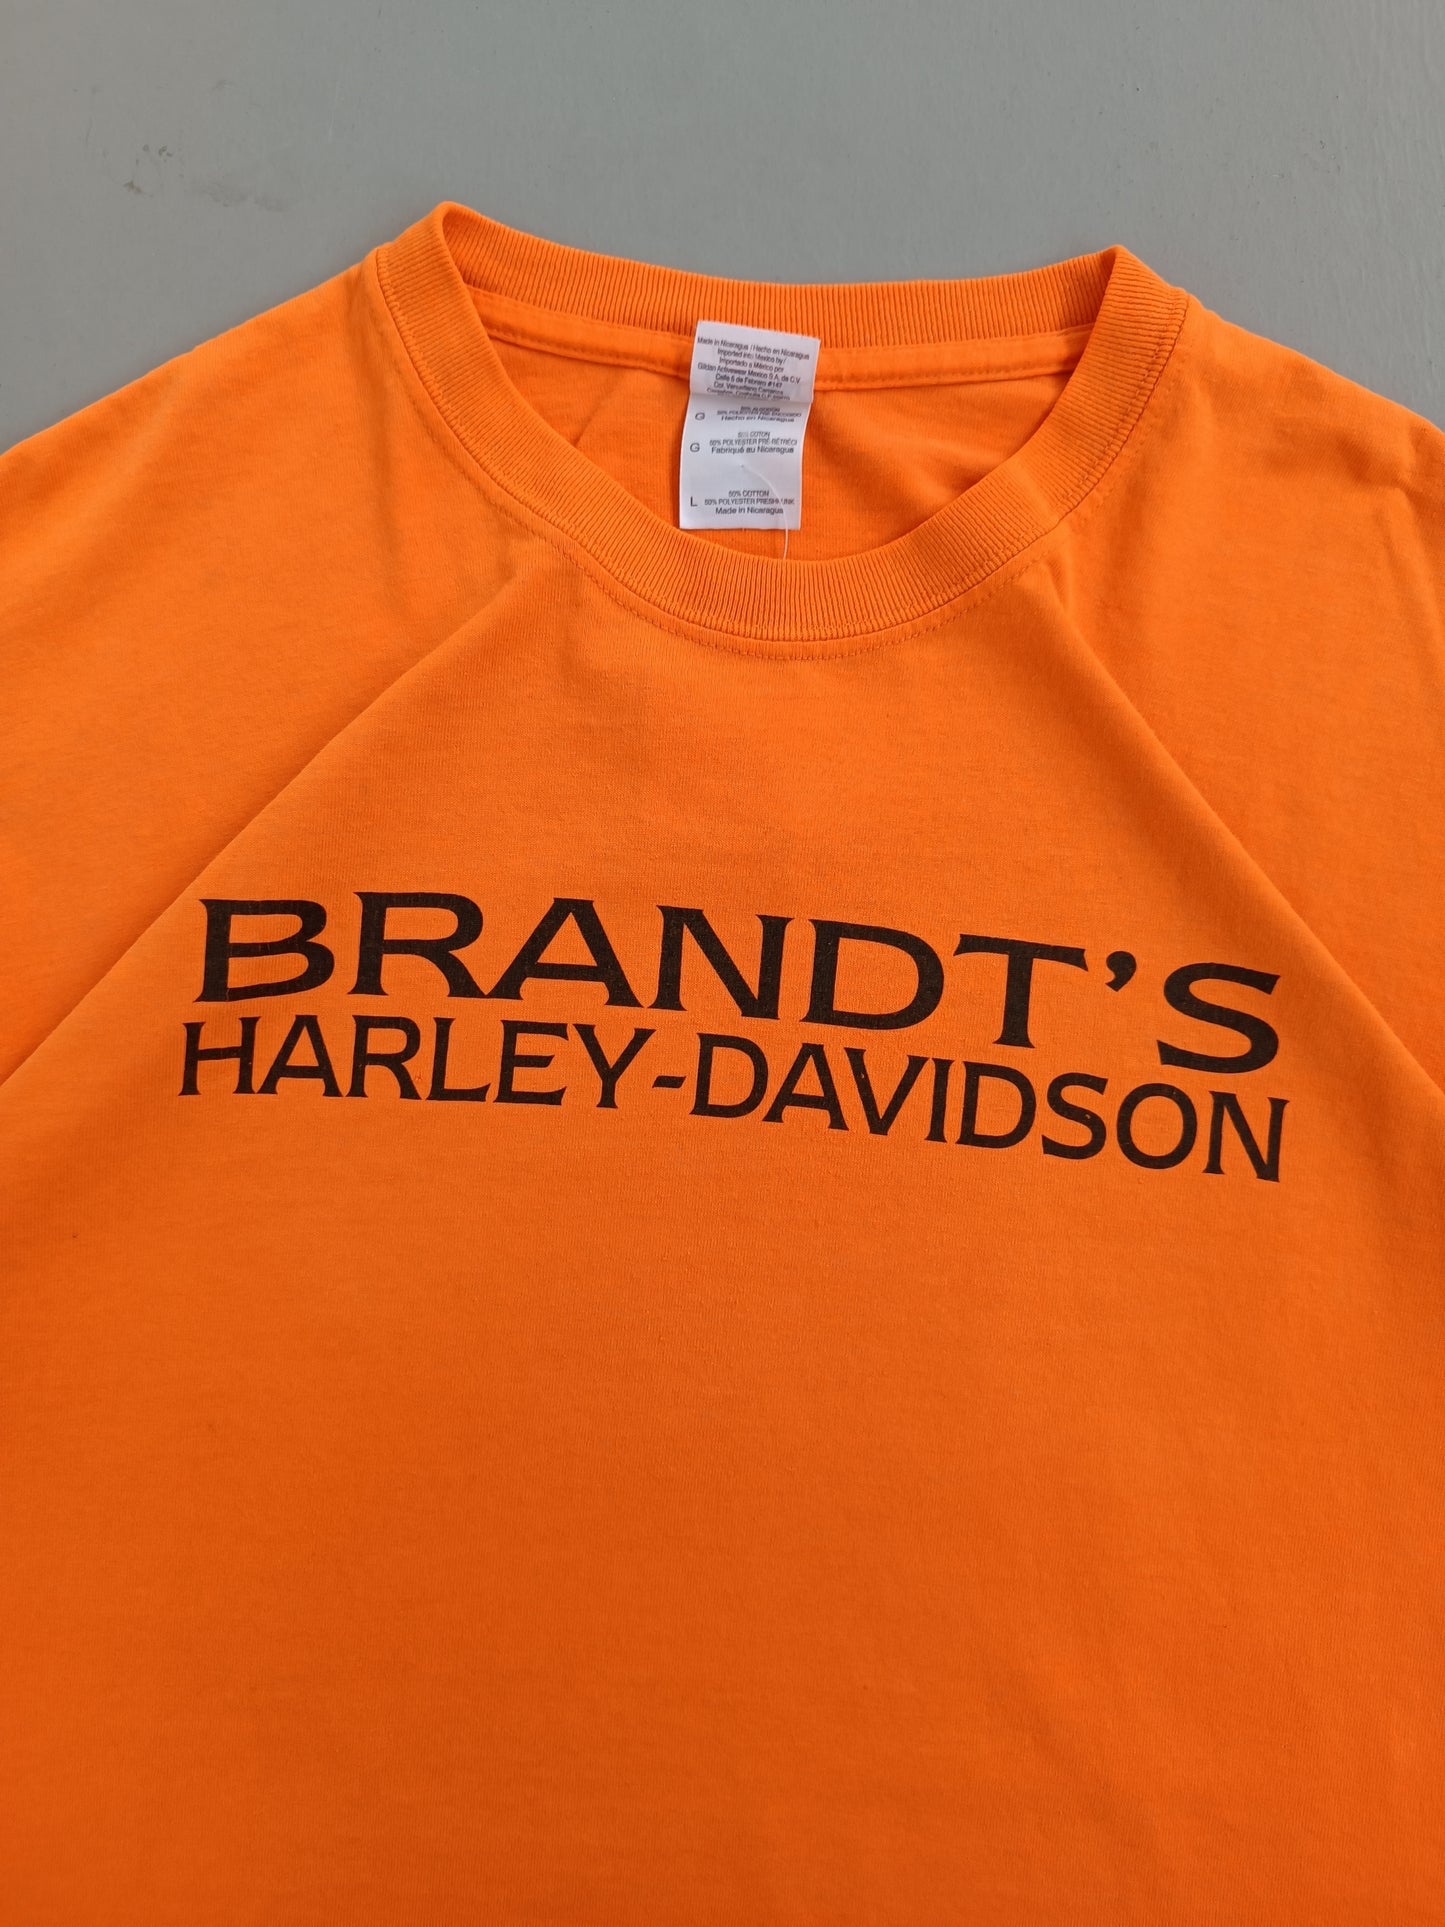 Brandt's Harley Davidson - L